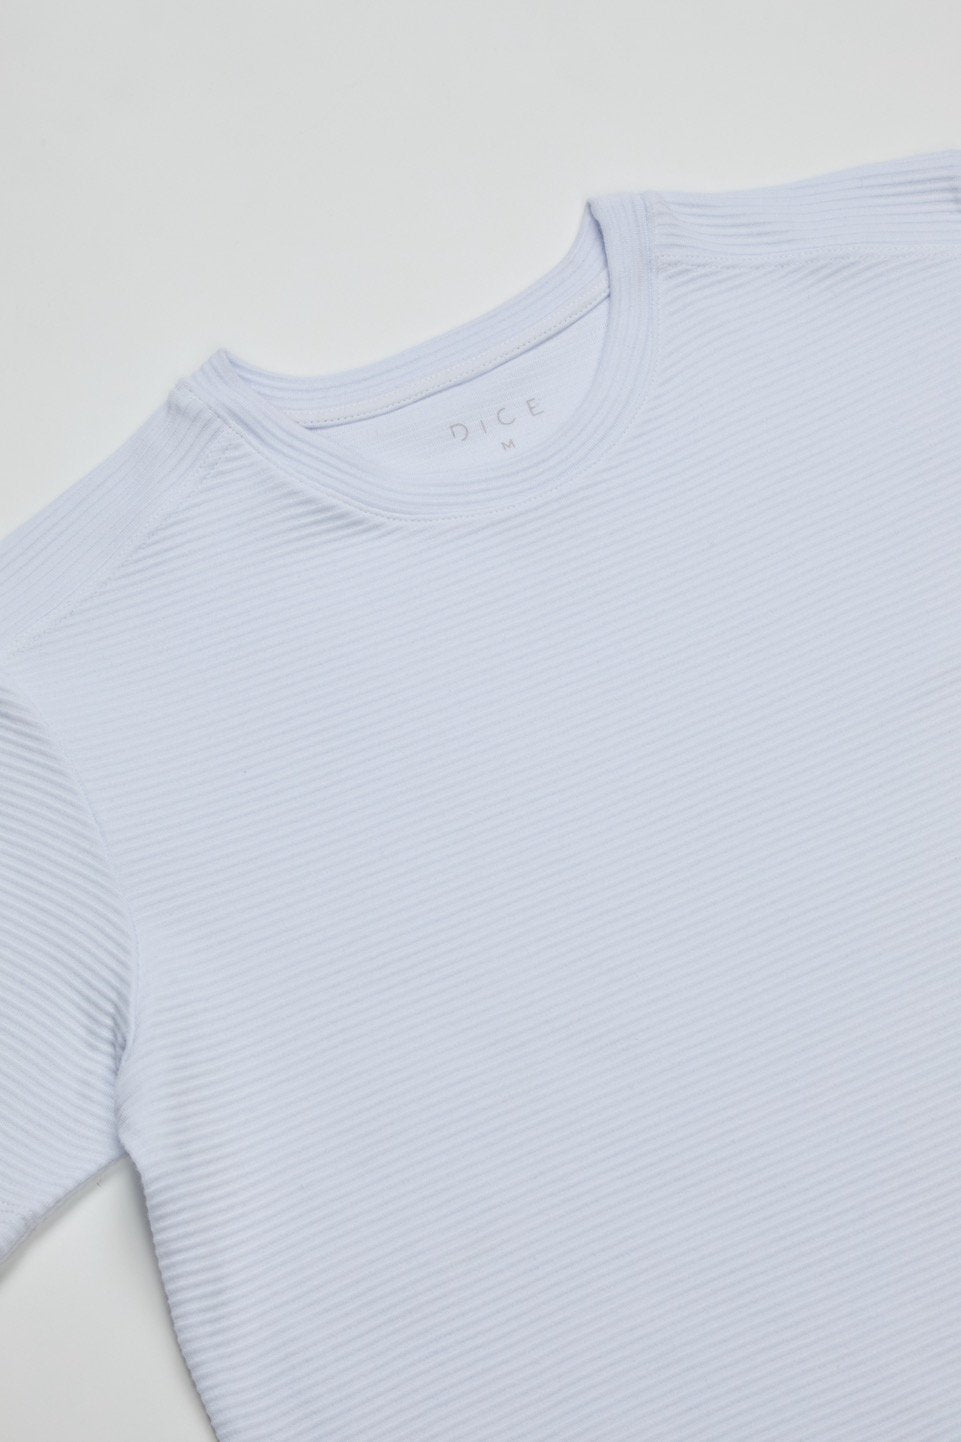 Camiseta Wavy Textura - Tecnologia Anti Odor